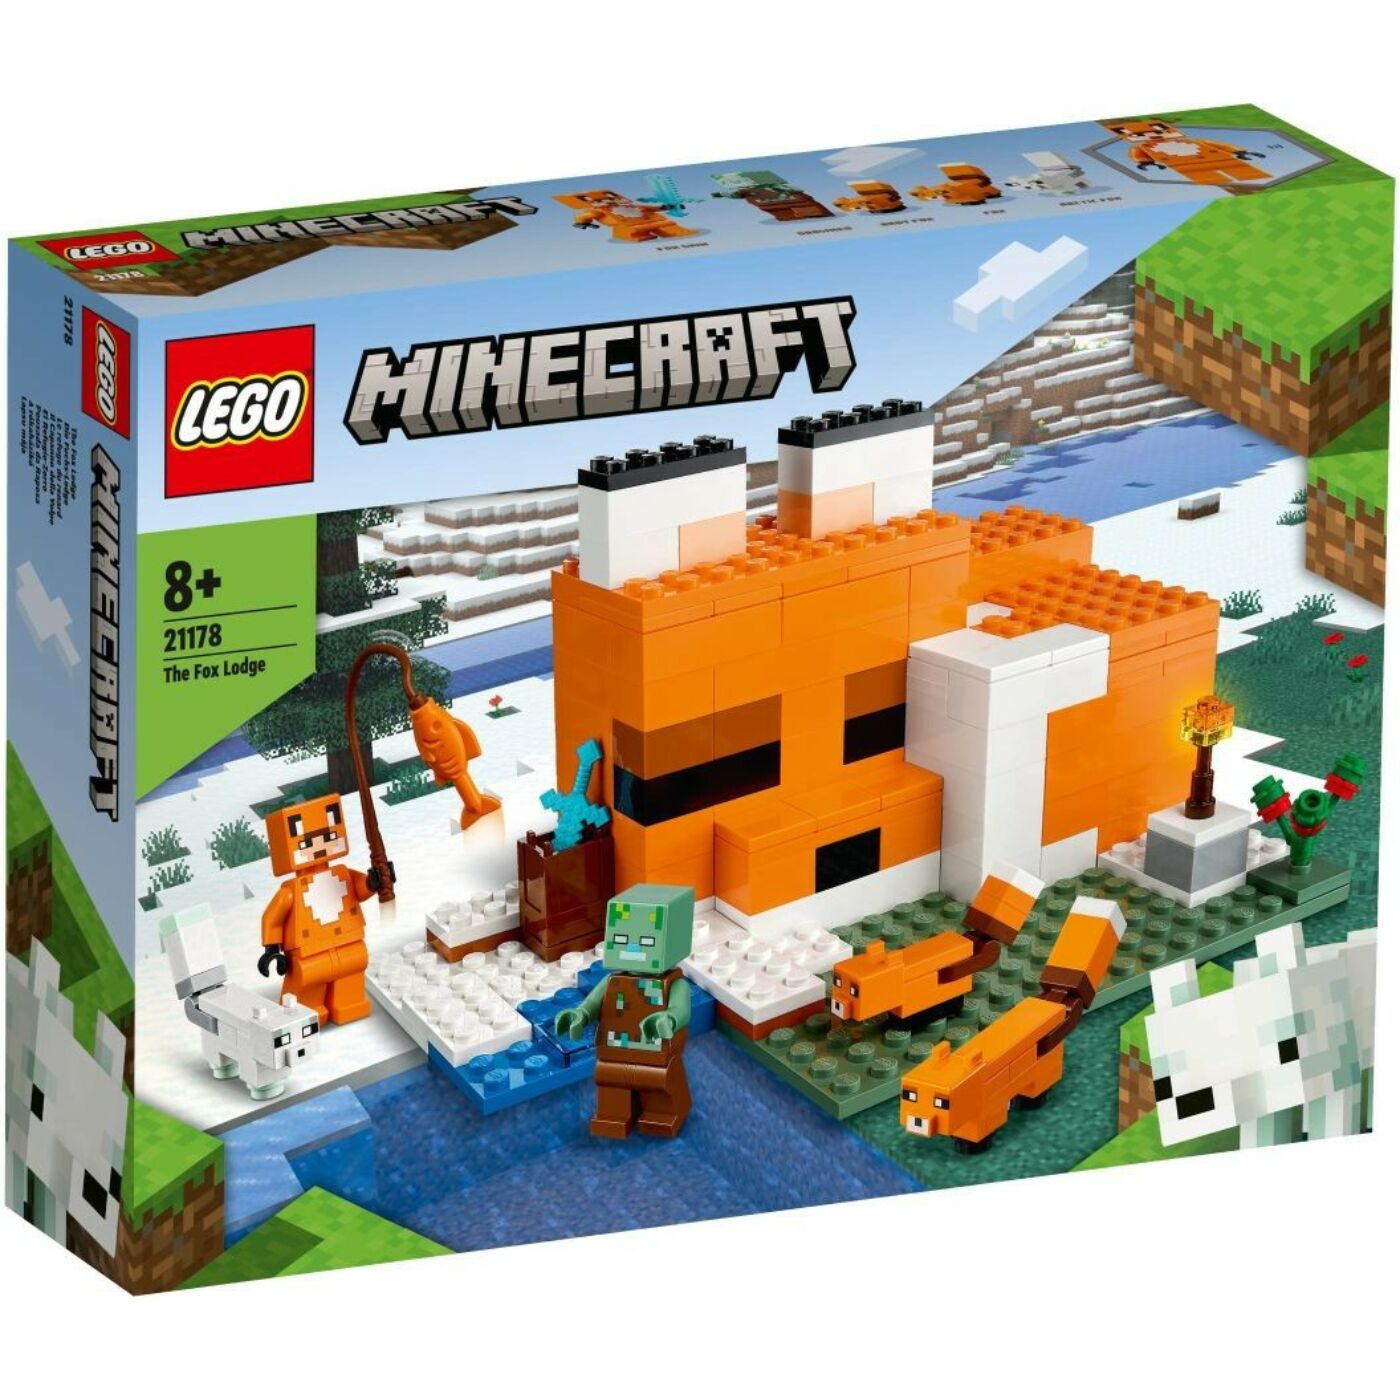 Lego Minecraft A rókaházikó